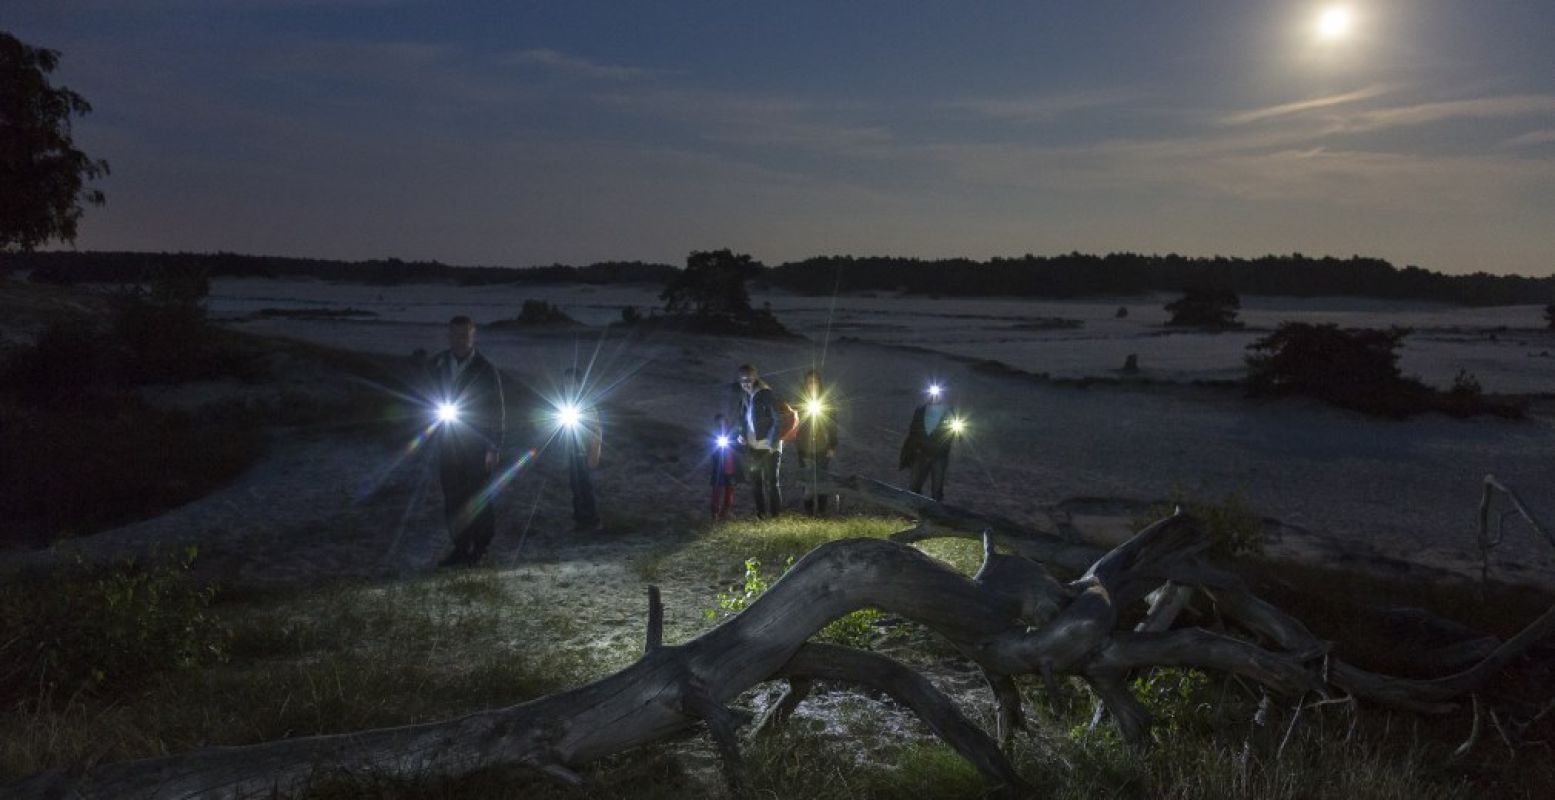 Ga op avontuur in de nacht, gewapend met zaklamp. Foto: Natuurmonumenten © Andries de la Lande Cremer